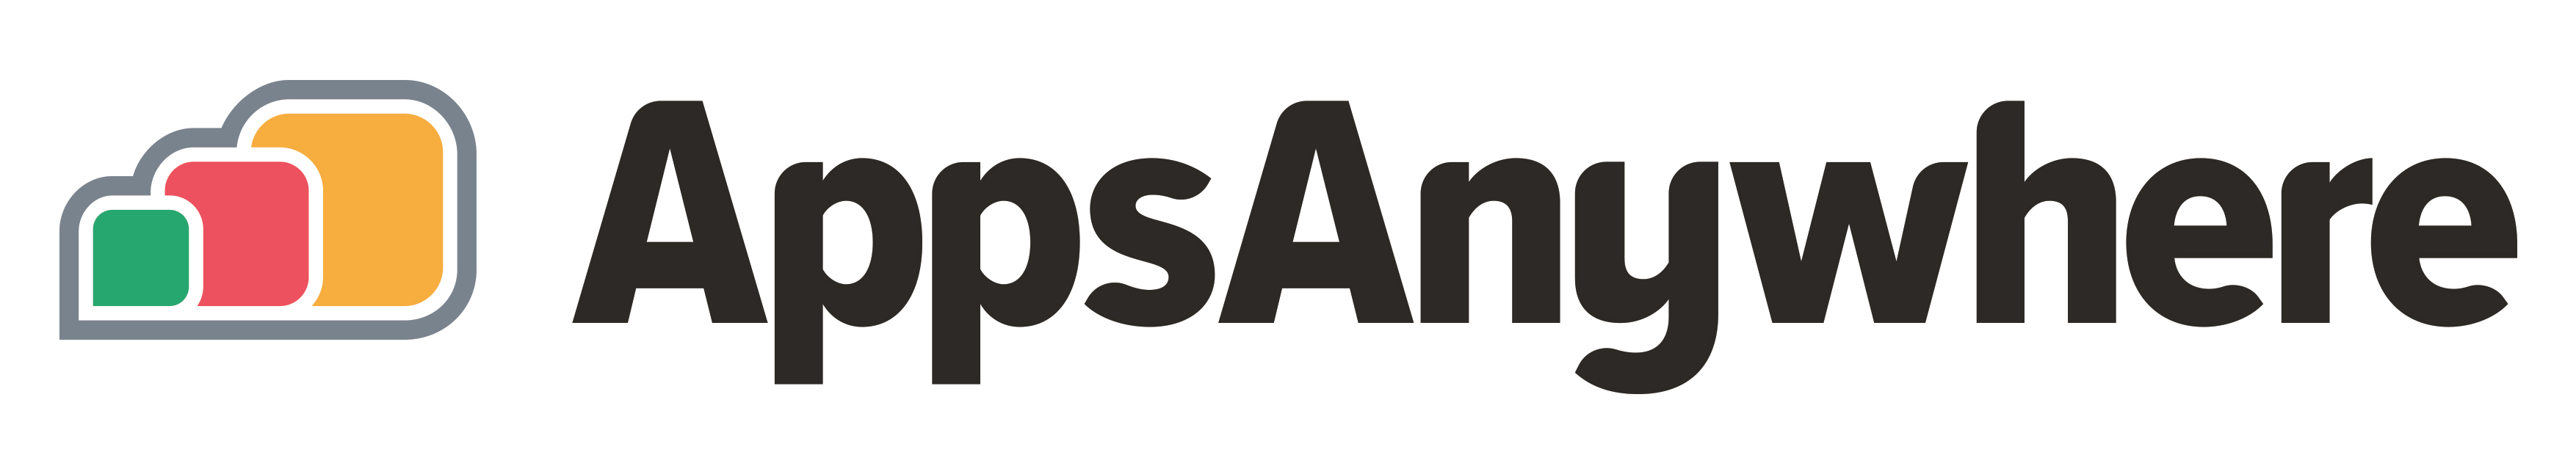 Image of AppsAnywhere logo